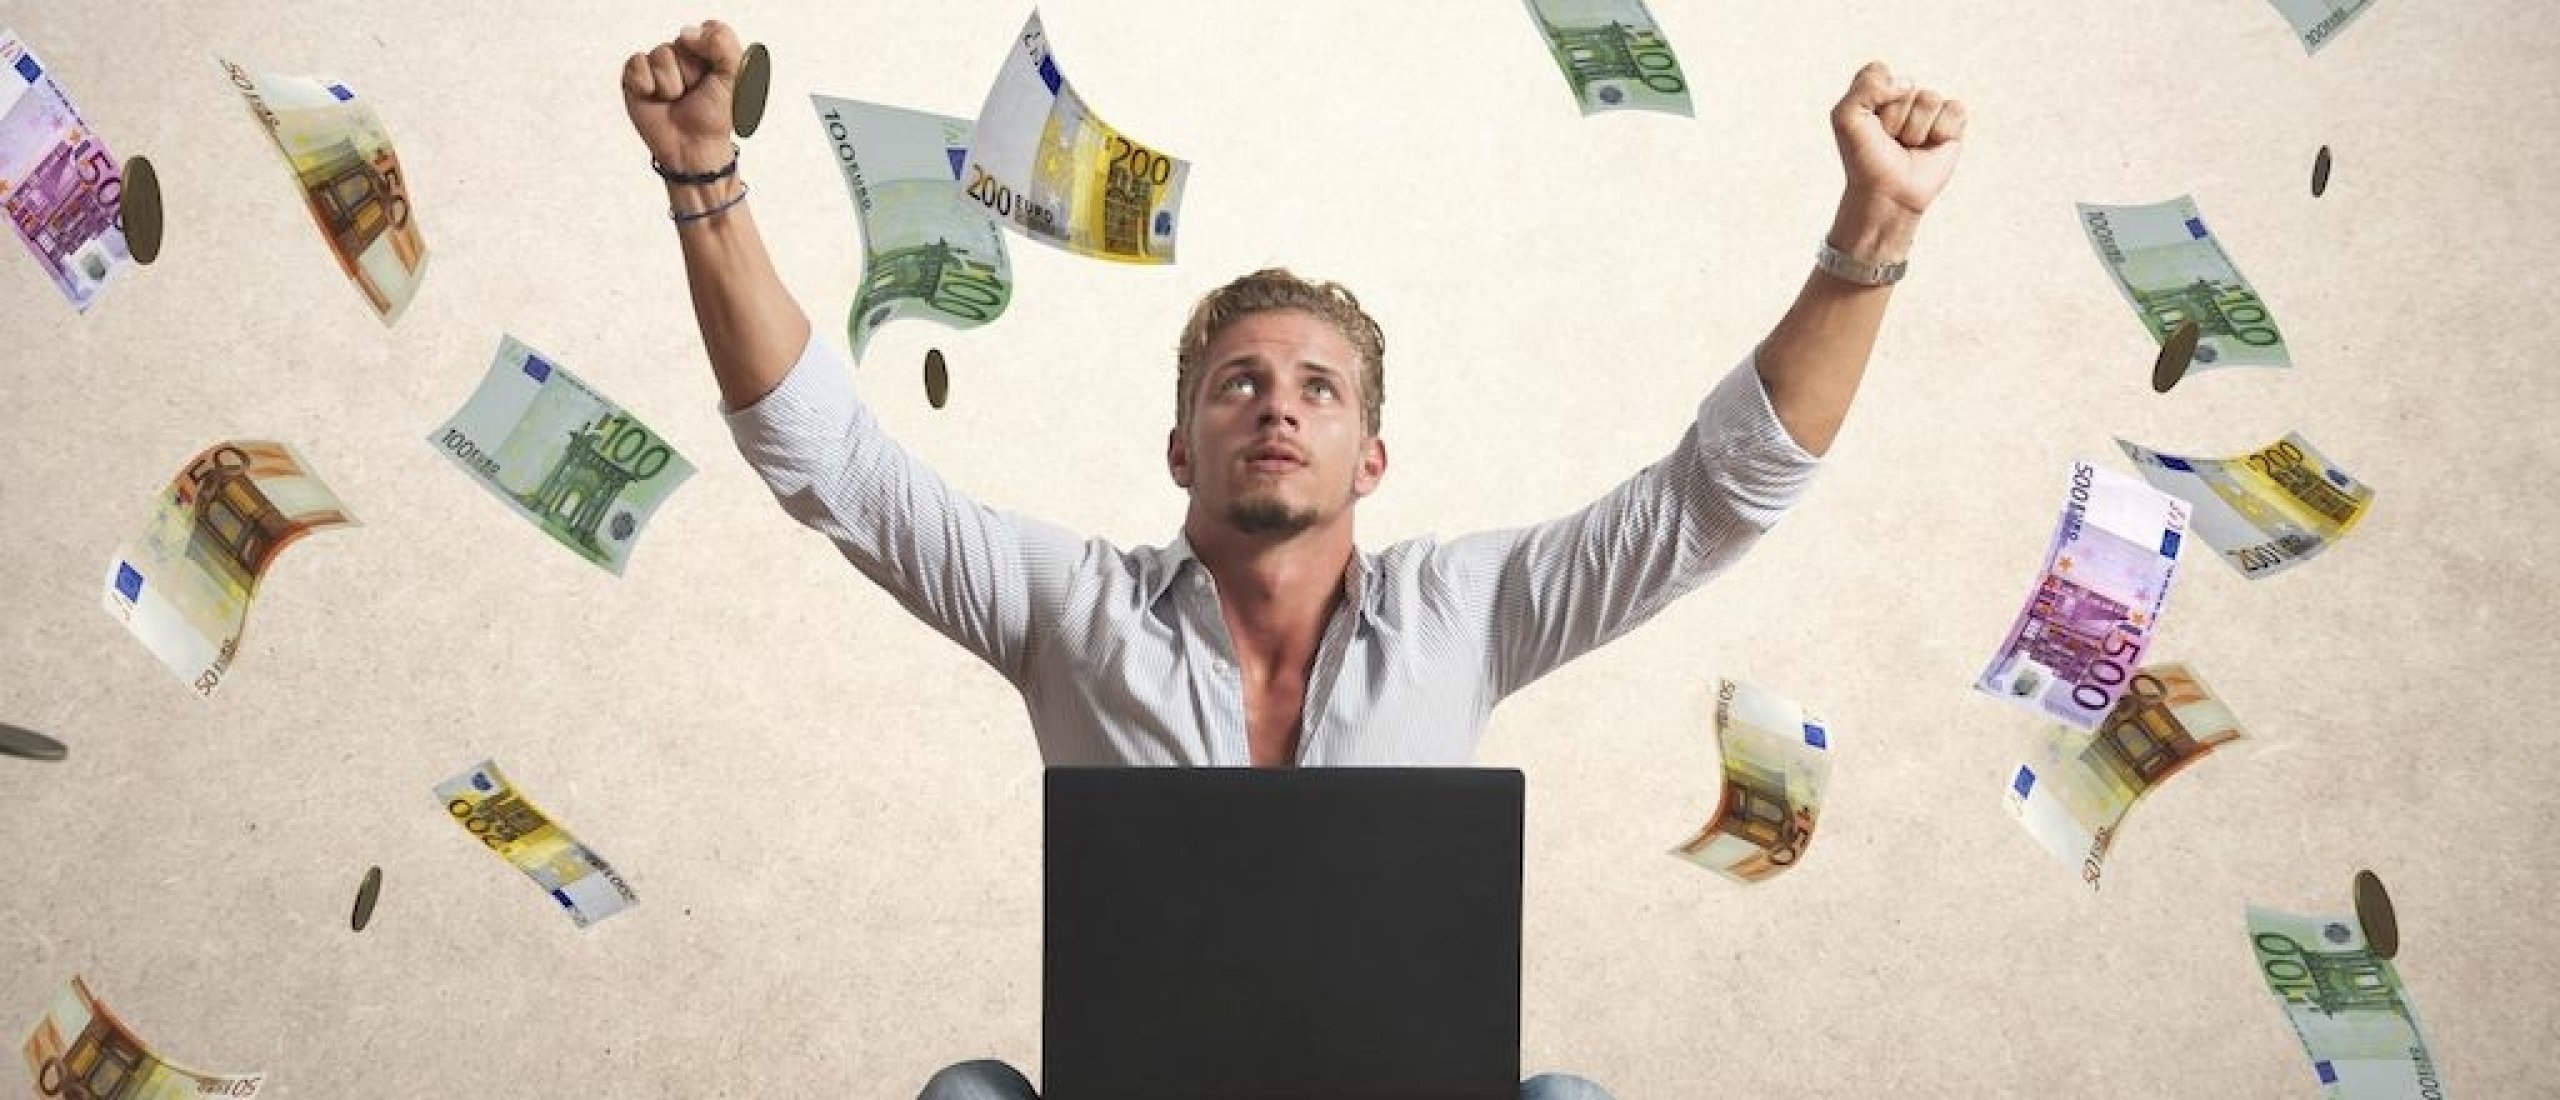 Hoe kan ik extra geld verdienen vanuit huis zonder online ervaring